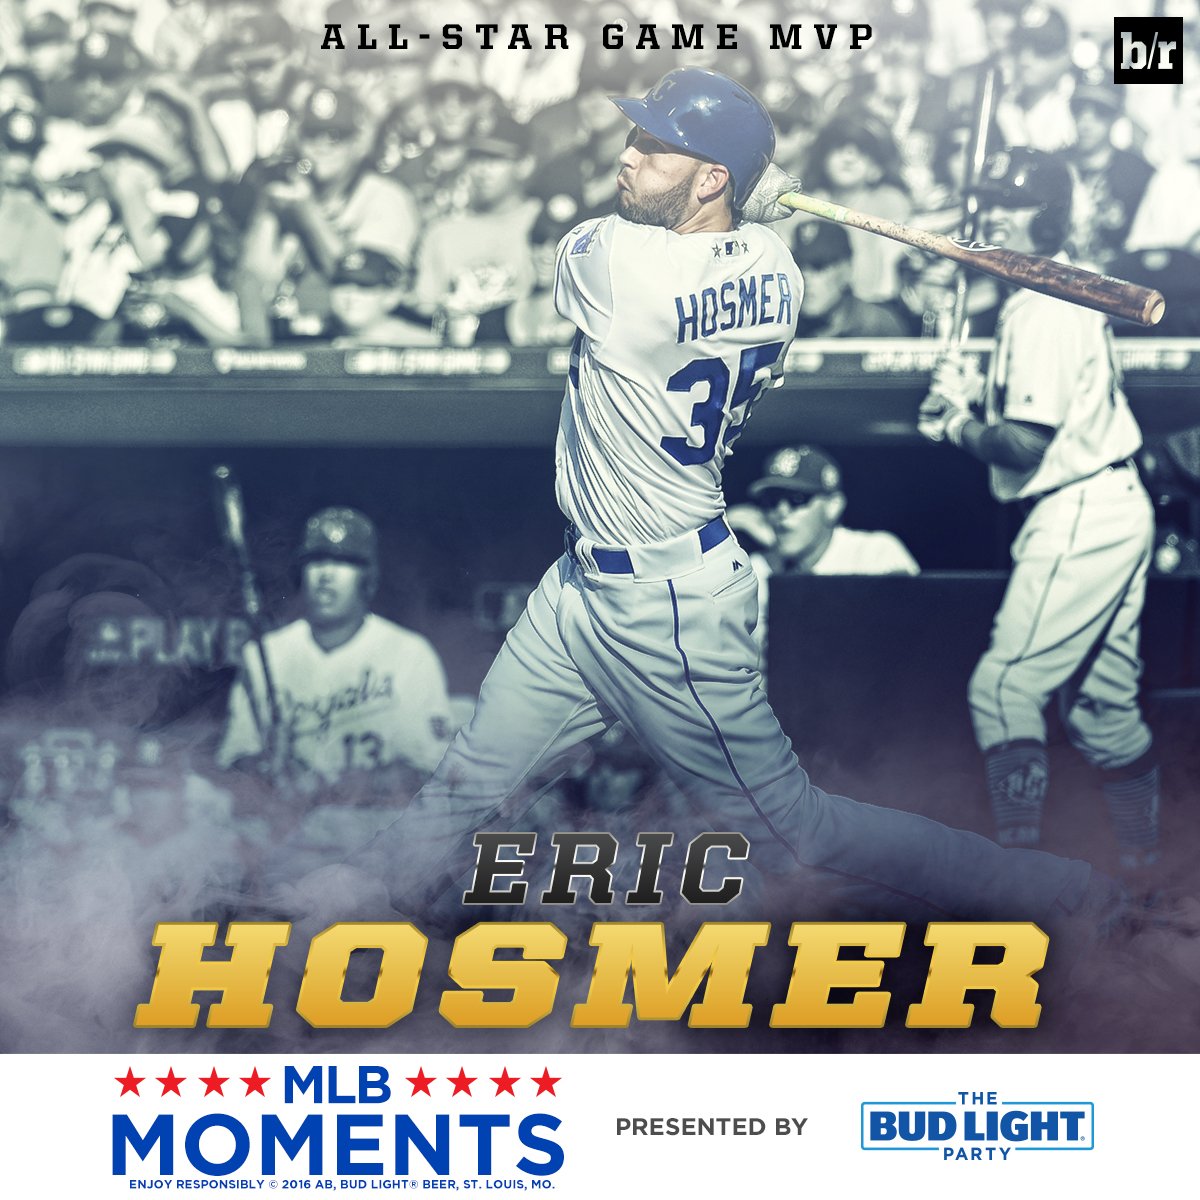 Eric Hosmer wins 2016 All-Star Game MVP Award